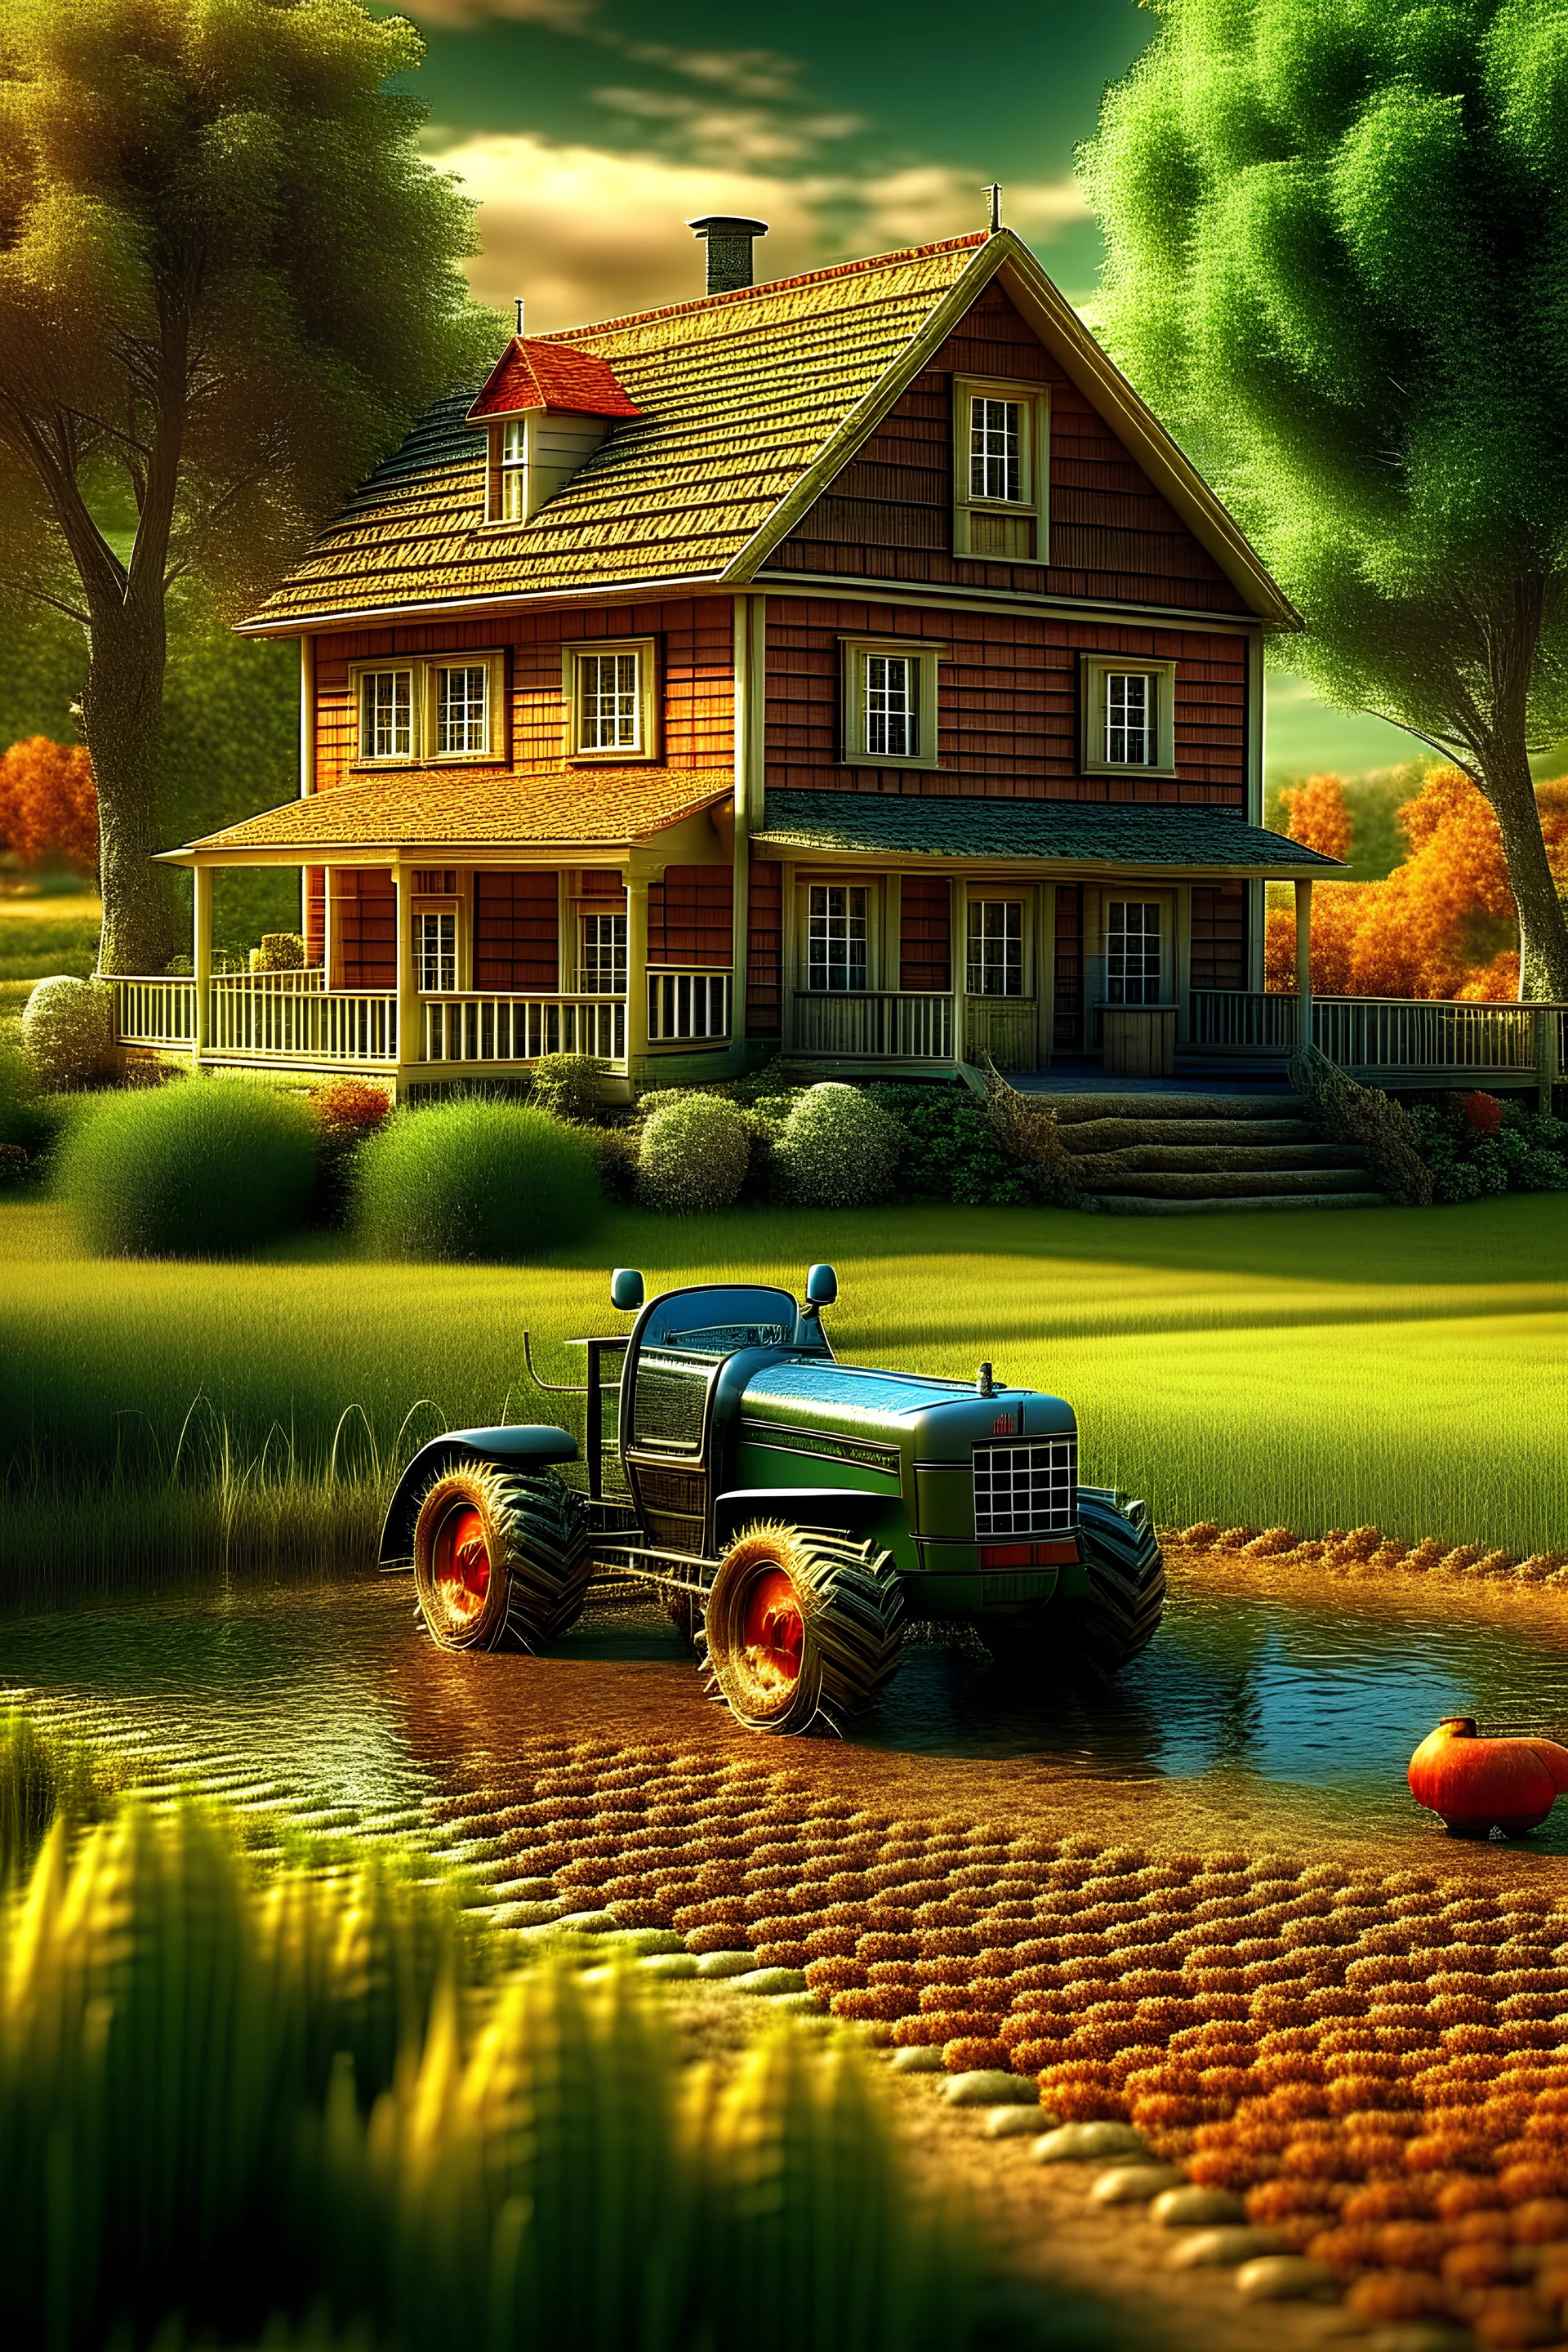 wiejski ozdobiony domek, rzeka, za domkiem las, drogą jedzie traktor ze słomą z rolnikiem, fotografia makro, bardzo drobne szczegóły, renderowanie cyfrowe., ultra HD, realistyczny, żywe kolory, bardzo szczegółowy, , idealna kompozycja, piękne, szczegółowe,